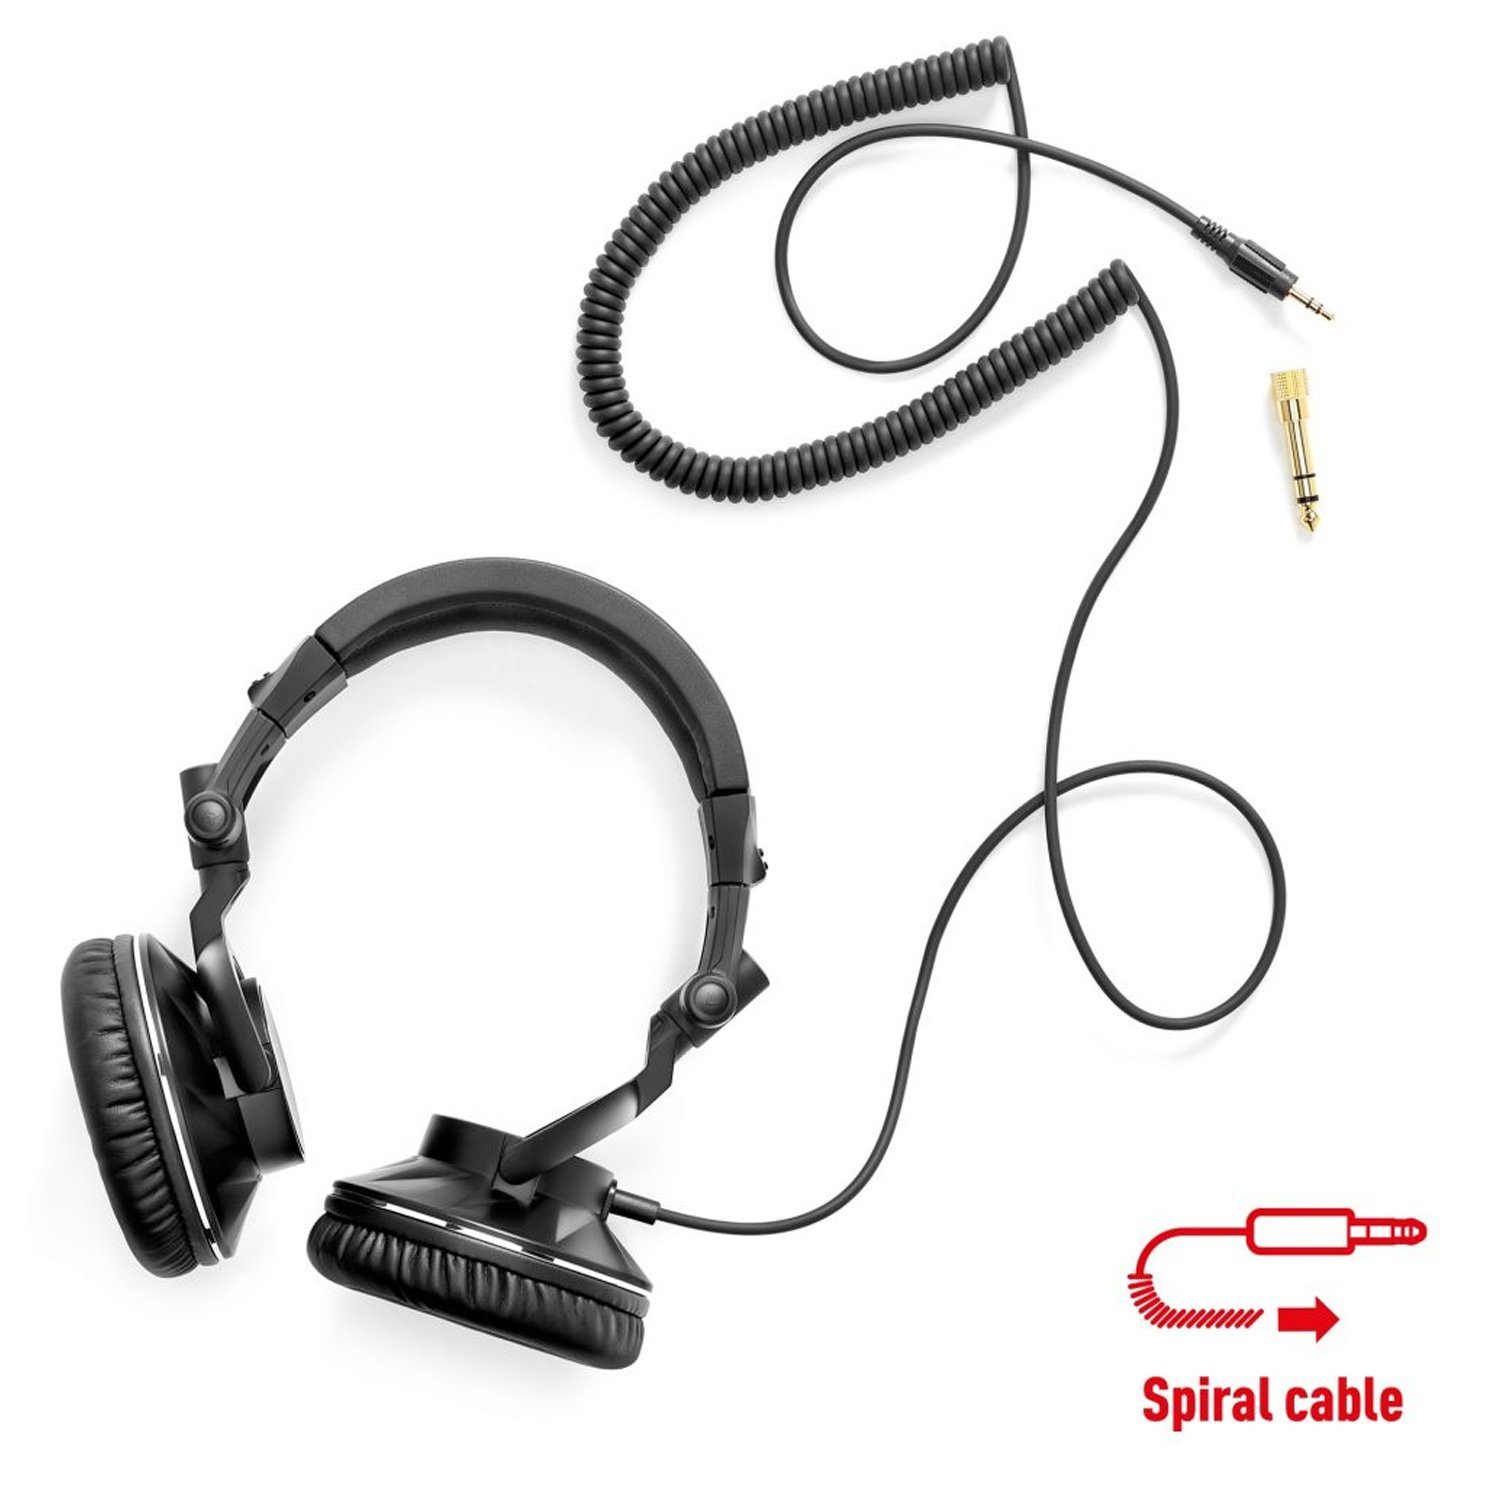 HERCULES DJ60 HDP Kabelgebunden) (Geräuschisolierung, -, Geschlossener DJ-Kopfhörer